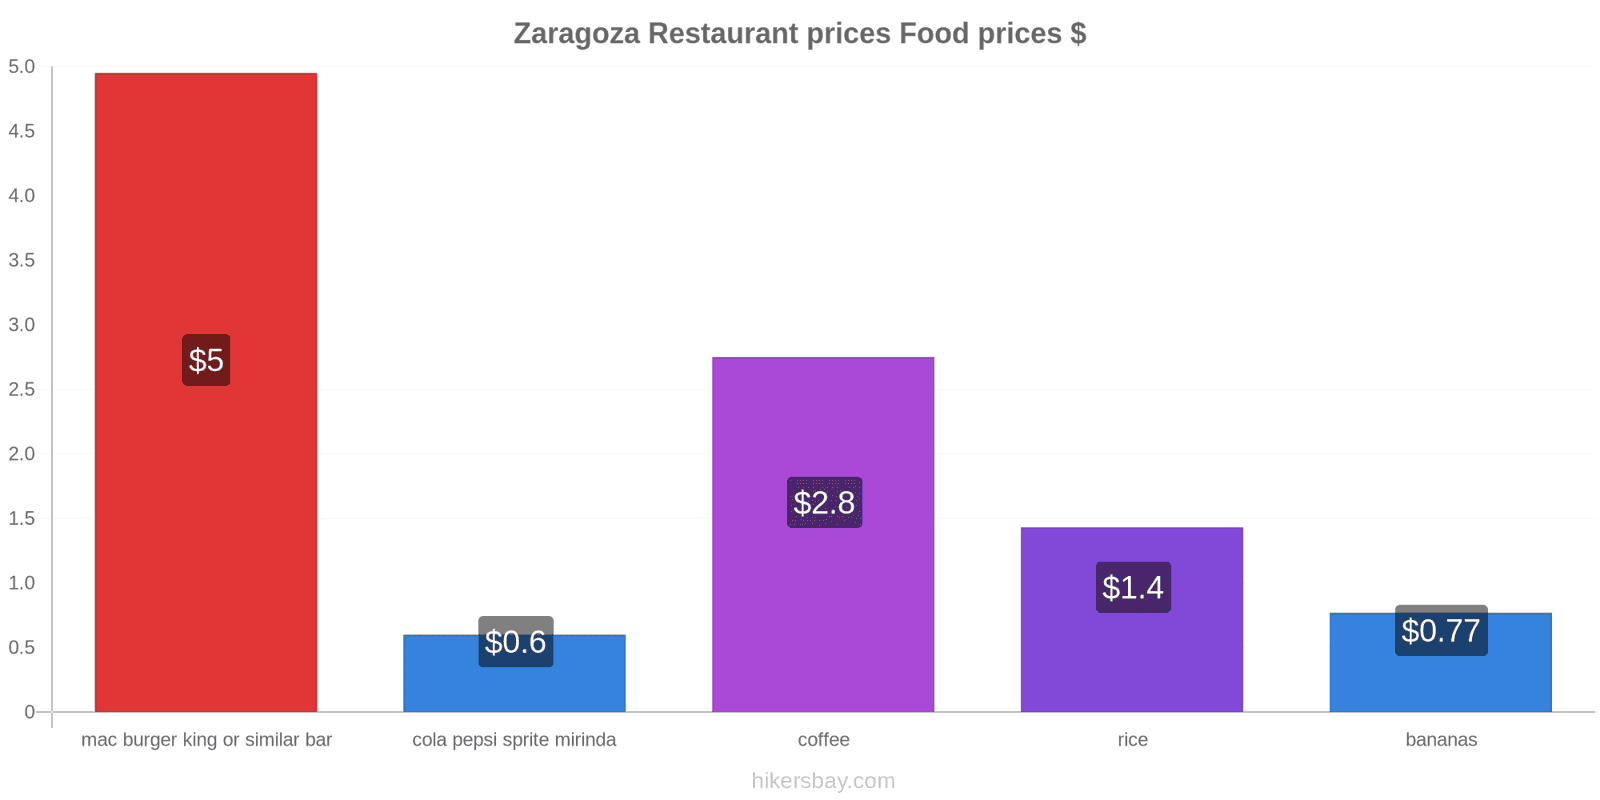 Zaragoza price changes hikersbay.com